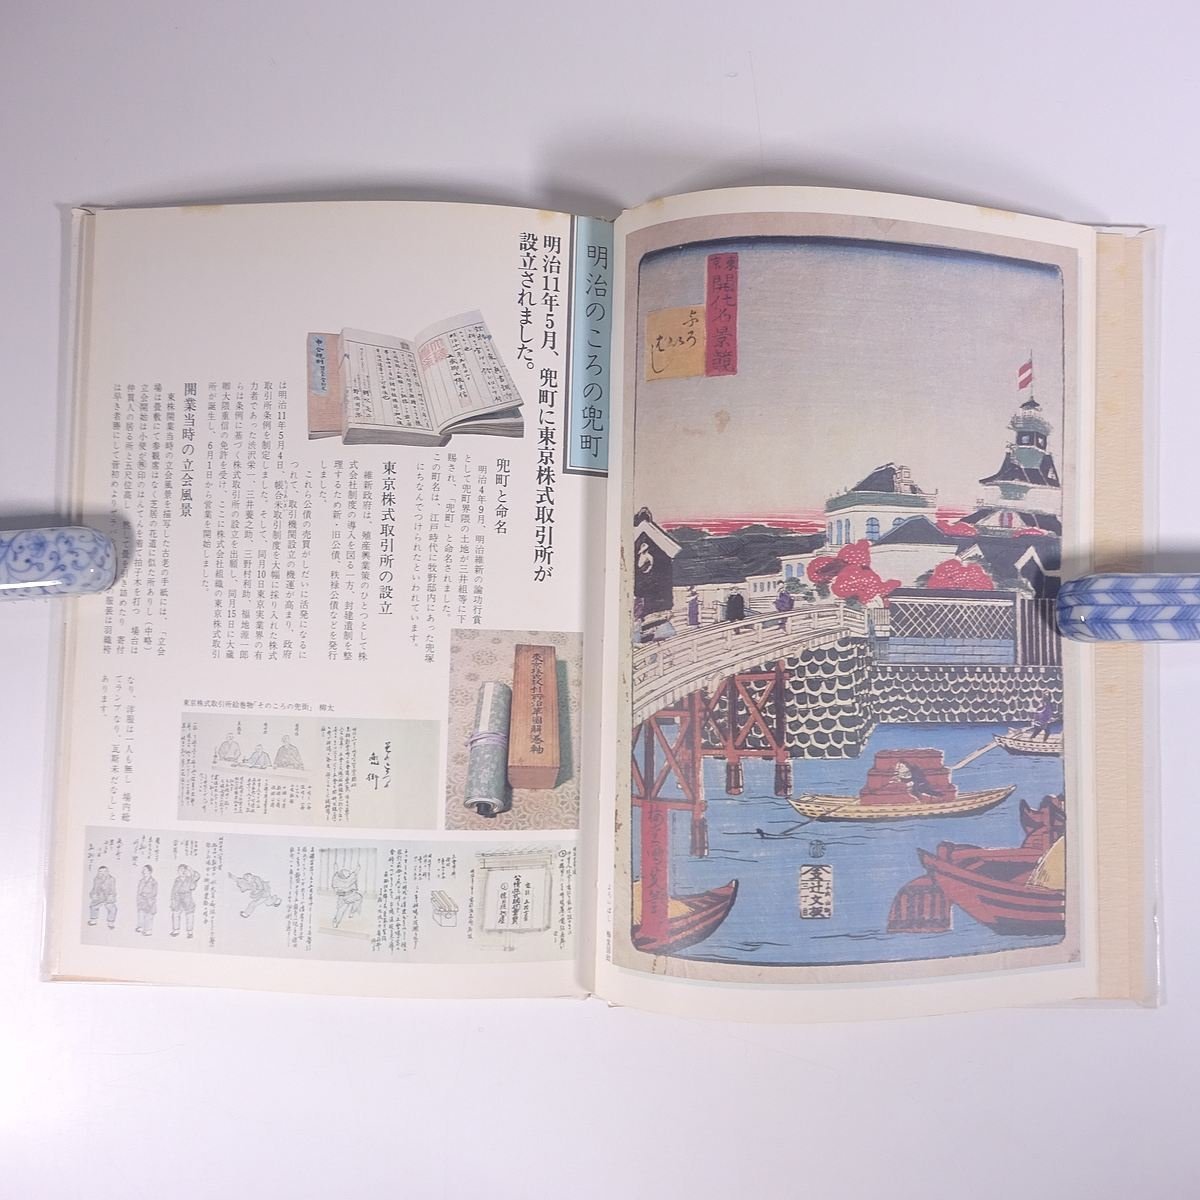 かぶとちょう 証券100年記念 東京証券取引所 1978 大型本 歴史 日本史 文化 民俗 資料 史料 兜町_画像8